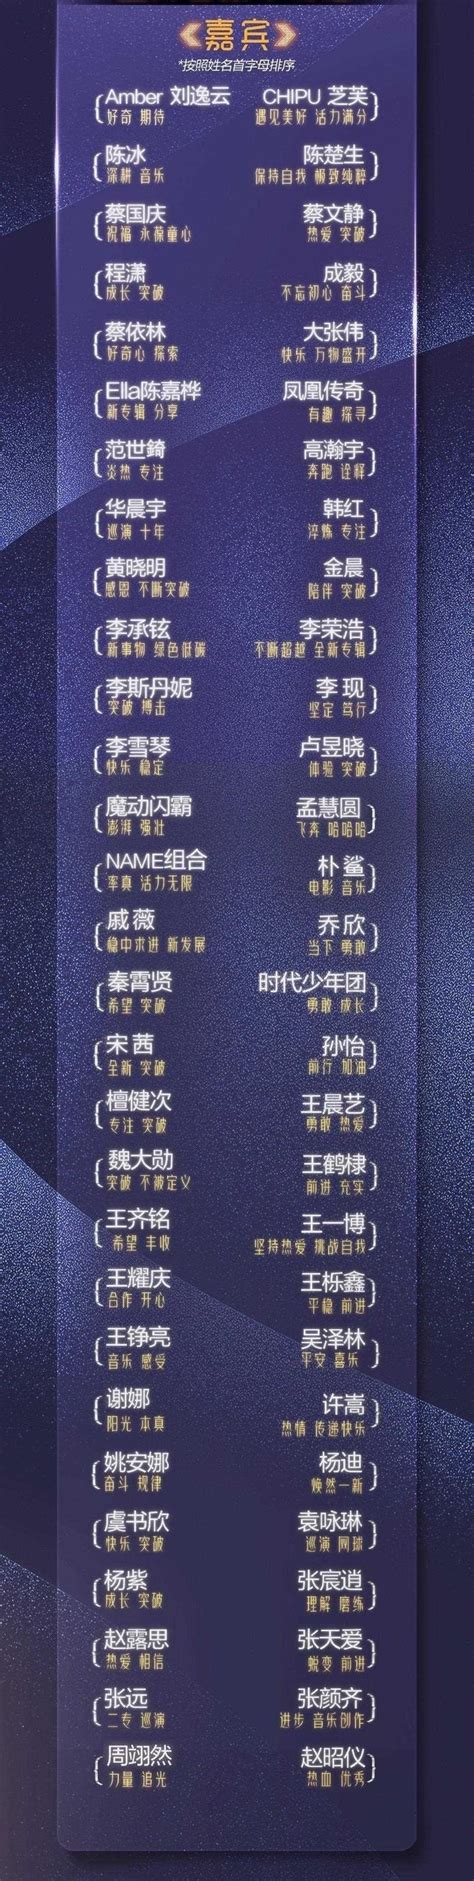 湖南卫视跨年演唱会节目清单